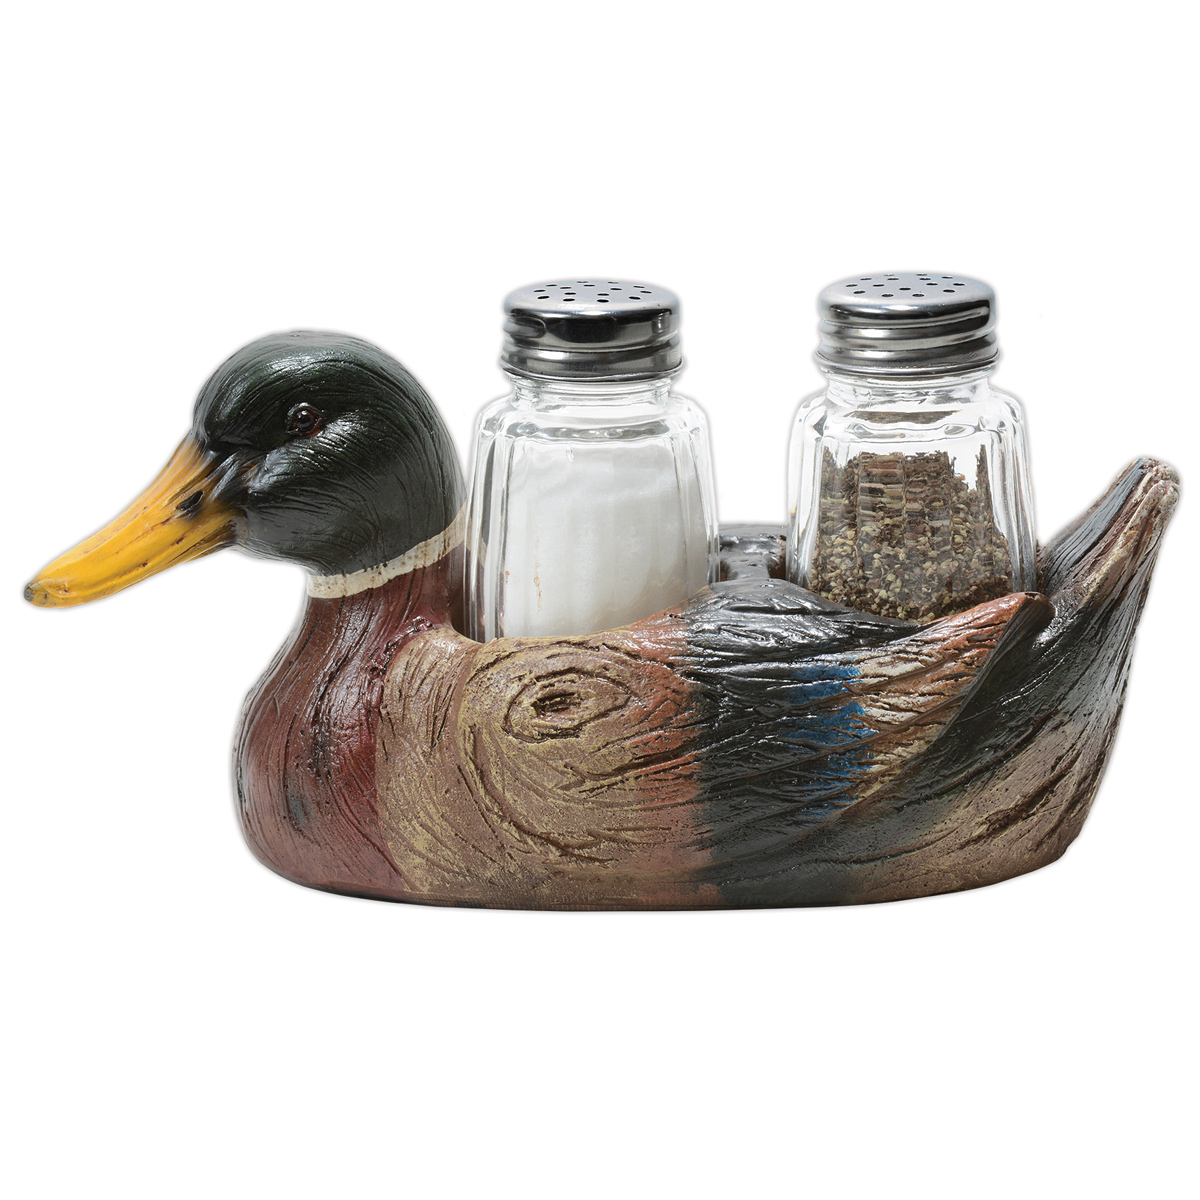 Mallard Duck Salt & Pepper Shaker Set